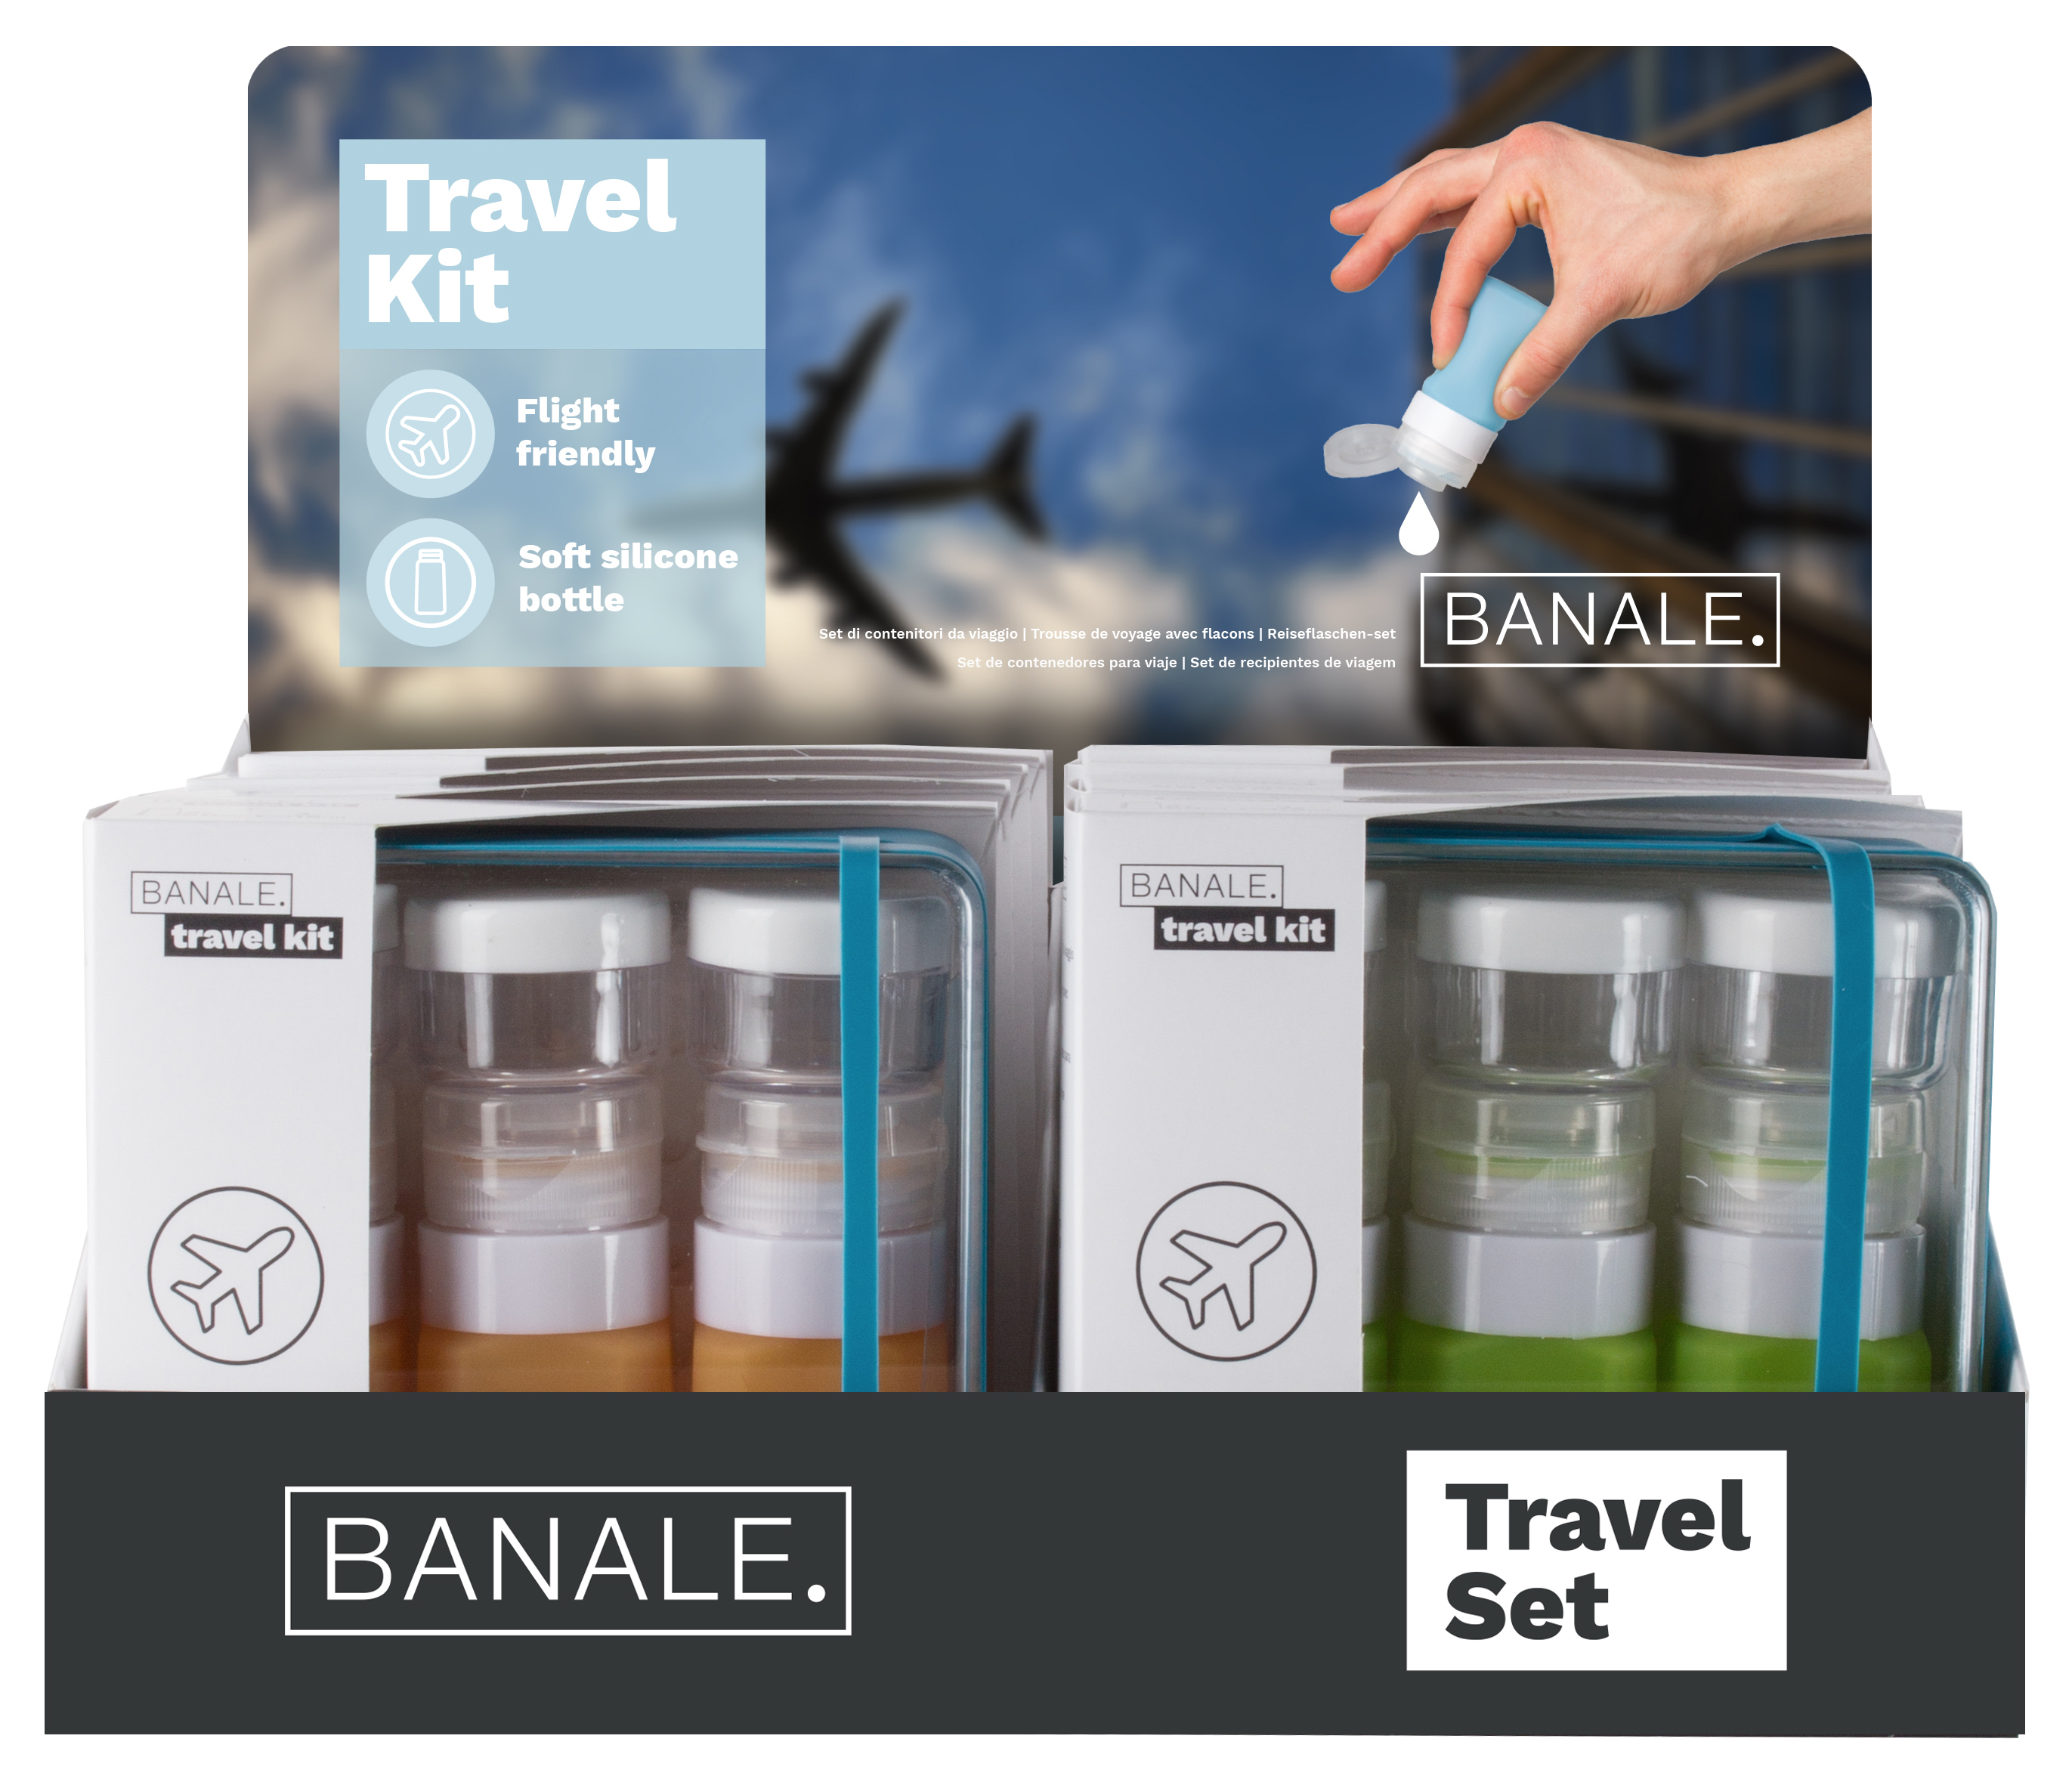 Travel kit starter kit